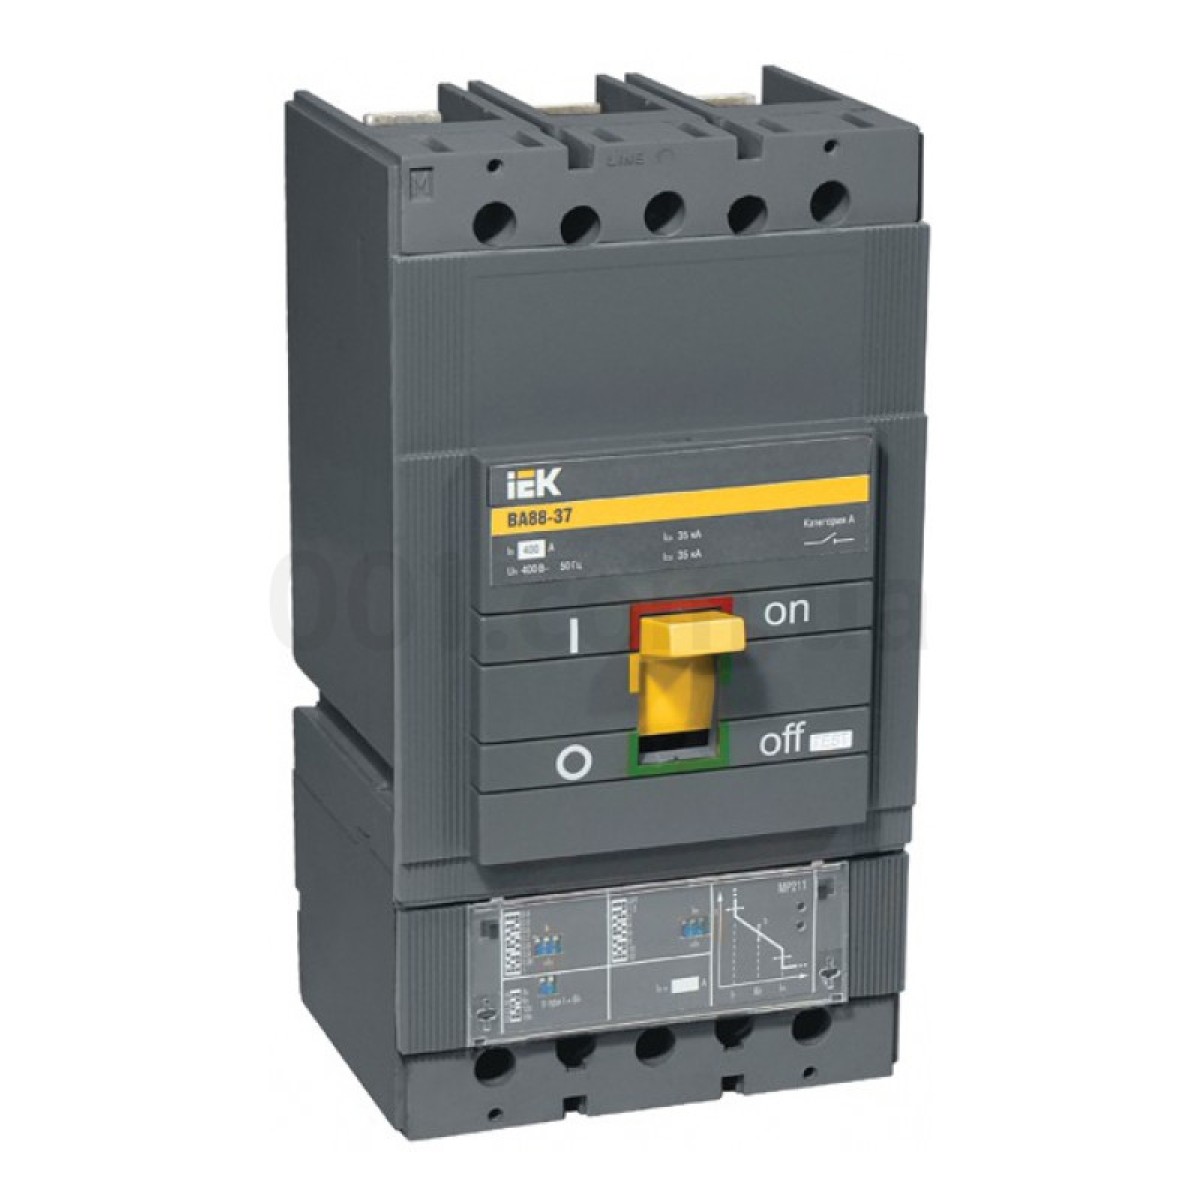 Автоматичний вимикач ВА88-37 3P 400А 35кА з електронним розчеплювачем MP211, IEK 98_98.jpg - фото 1